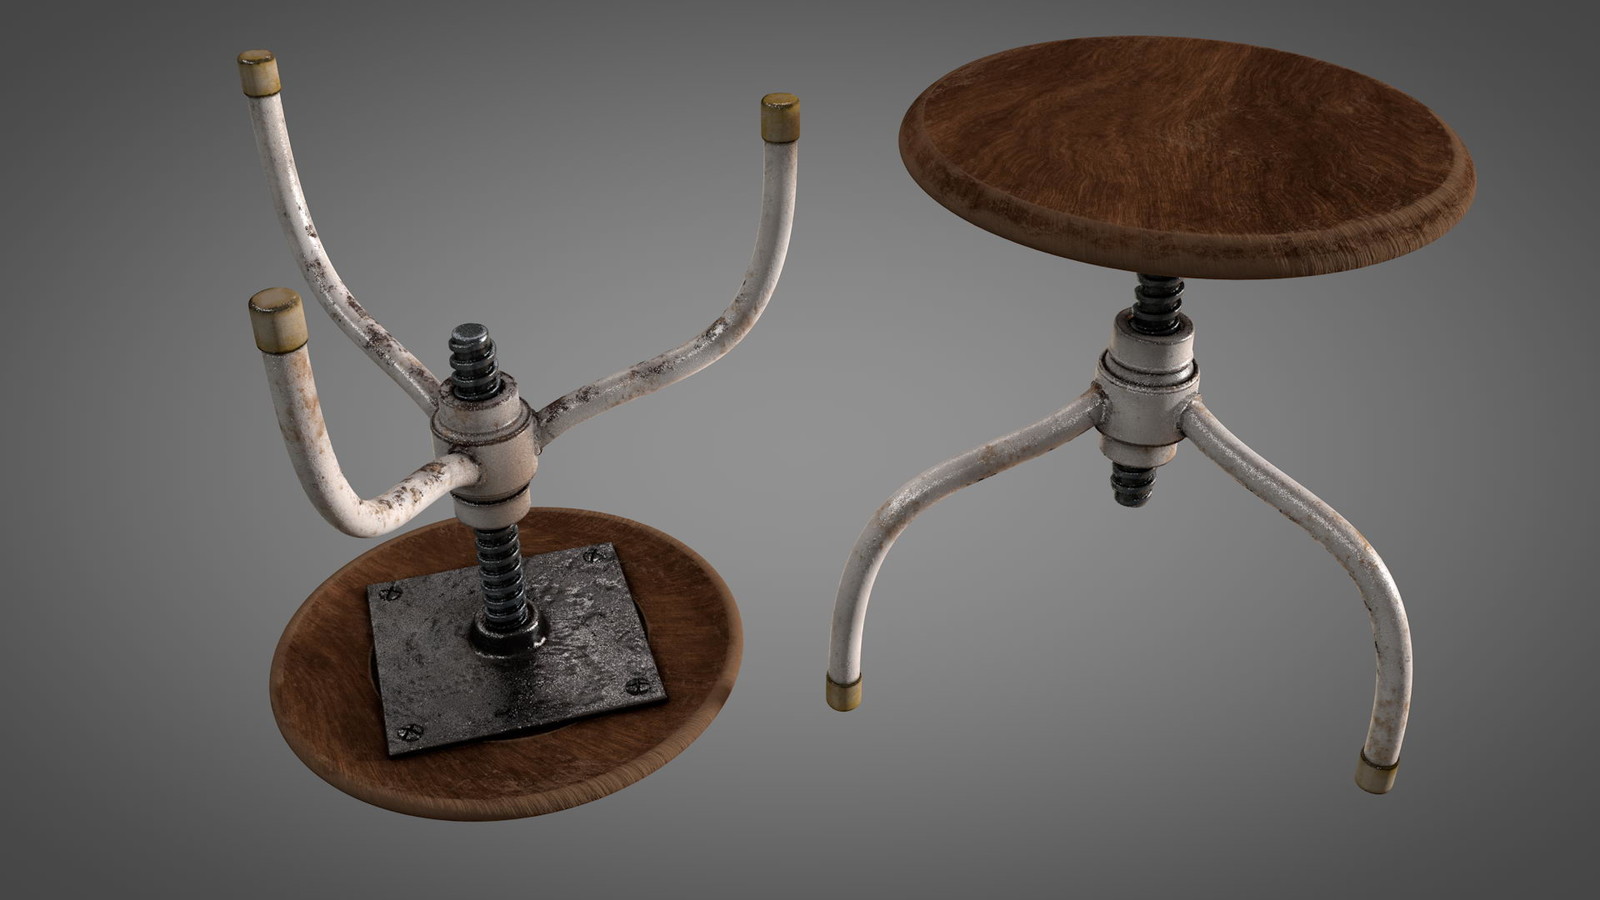 Small worn vintage stool